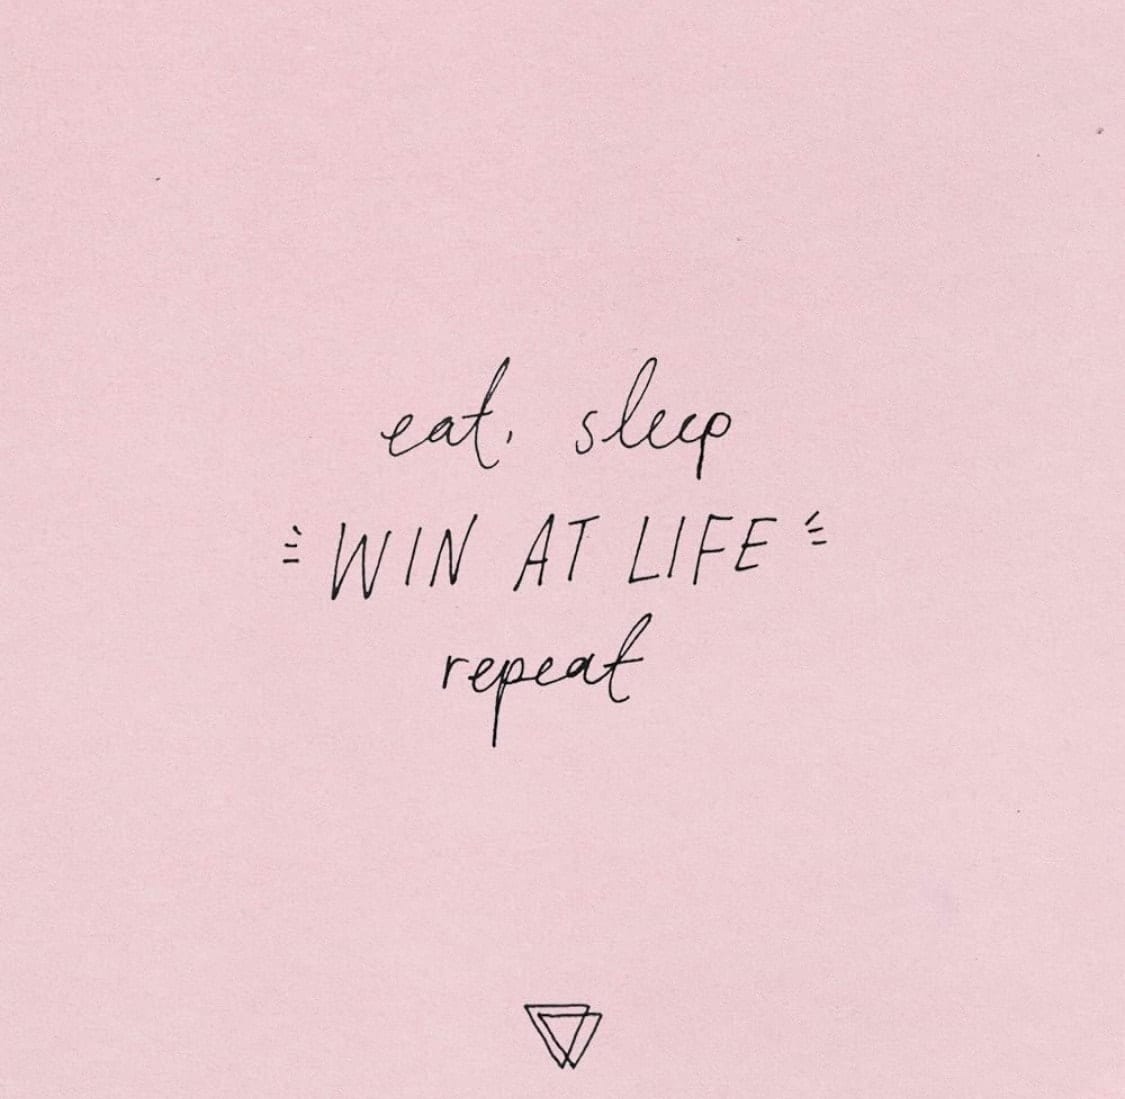 Eat Sleep - Win at Life - Repeat